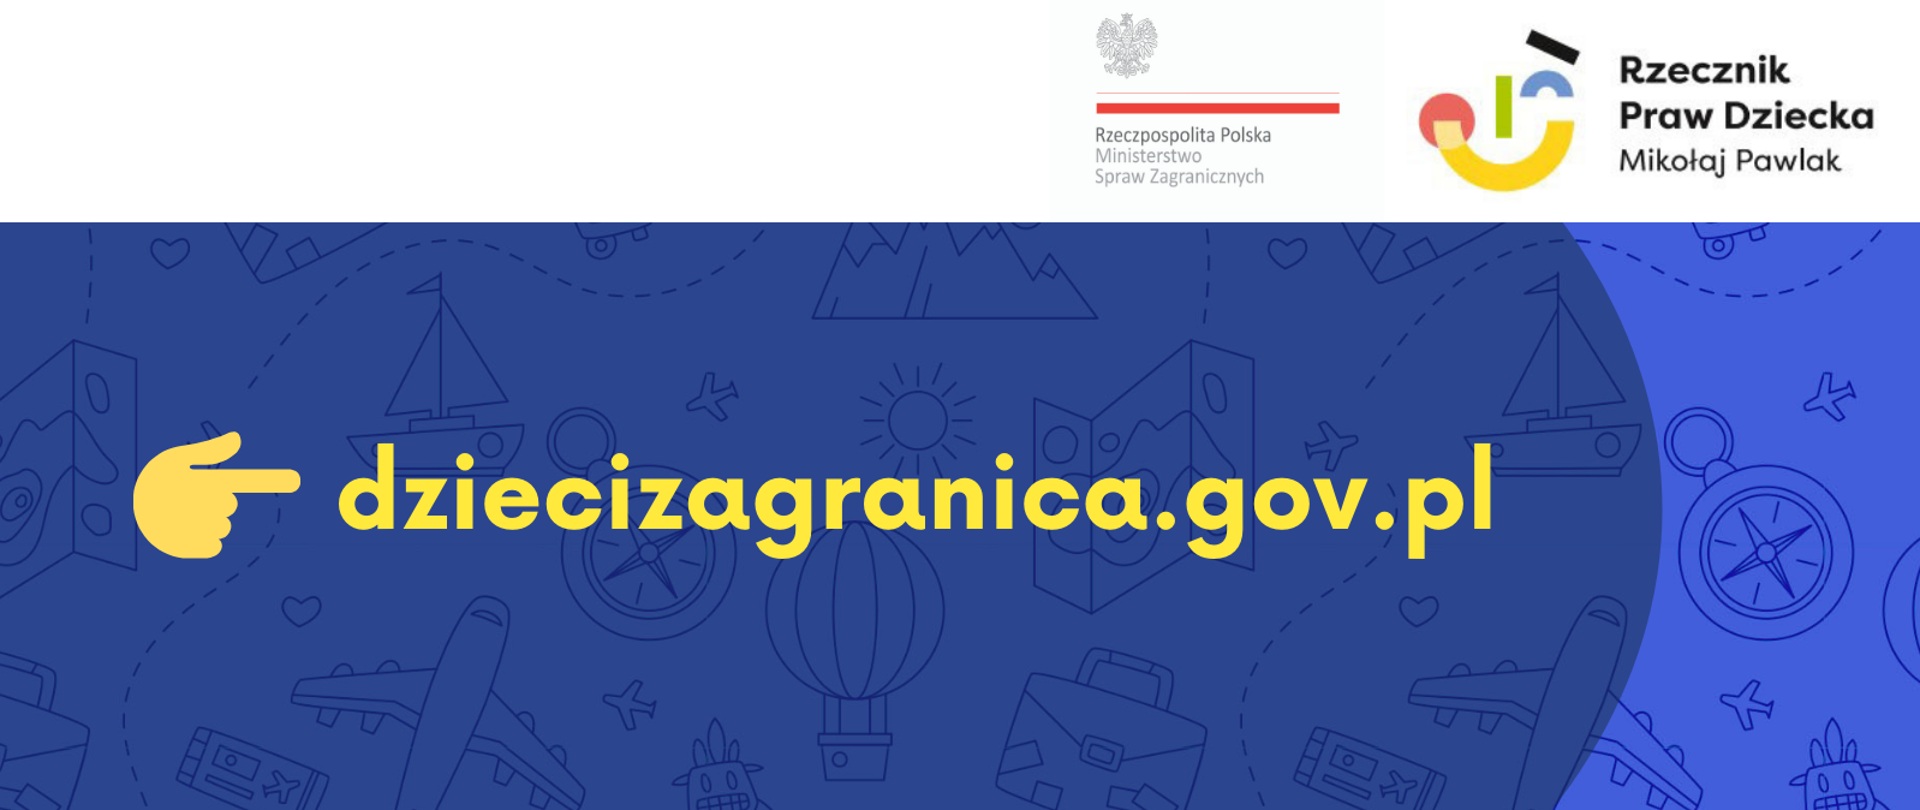 strona internetowa dziecizagranica.gov.pl